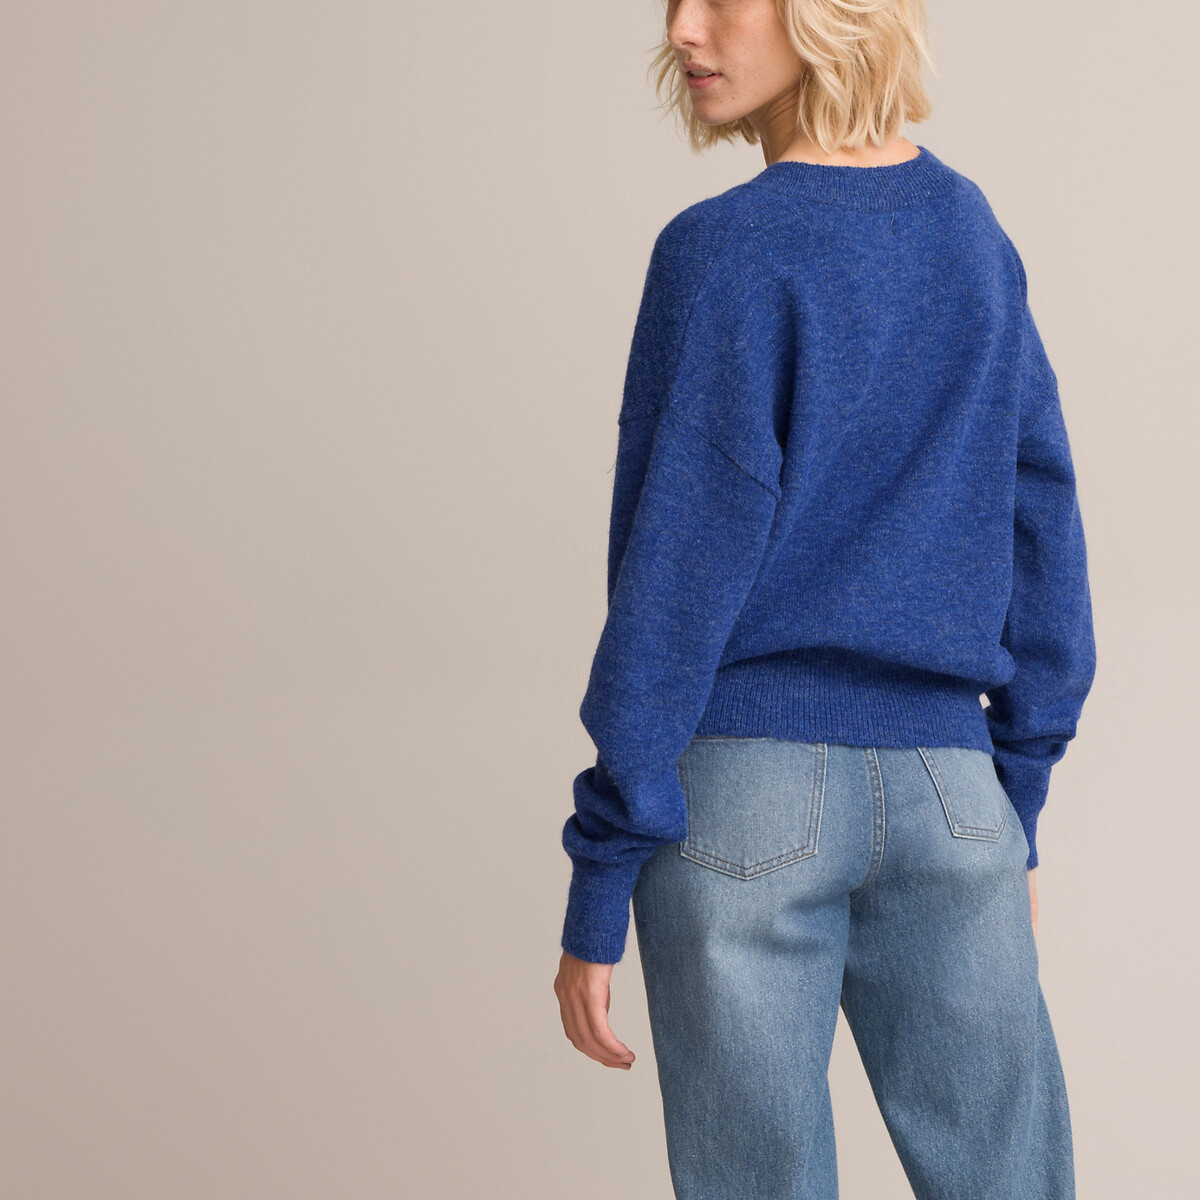 Пуловер LA REDOUTE COLLECTIONS Пуловер С V-образным вырезом из плотного трикотажа XL синий, размер XL - фото 3